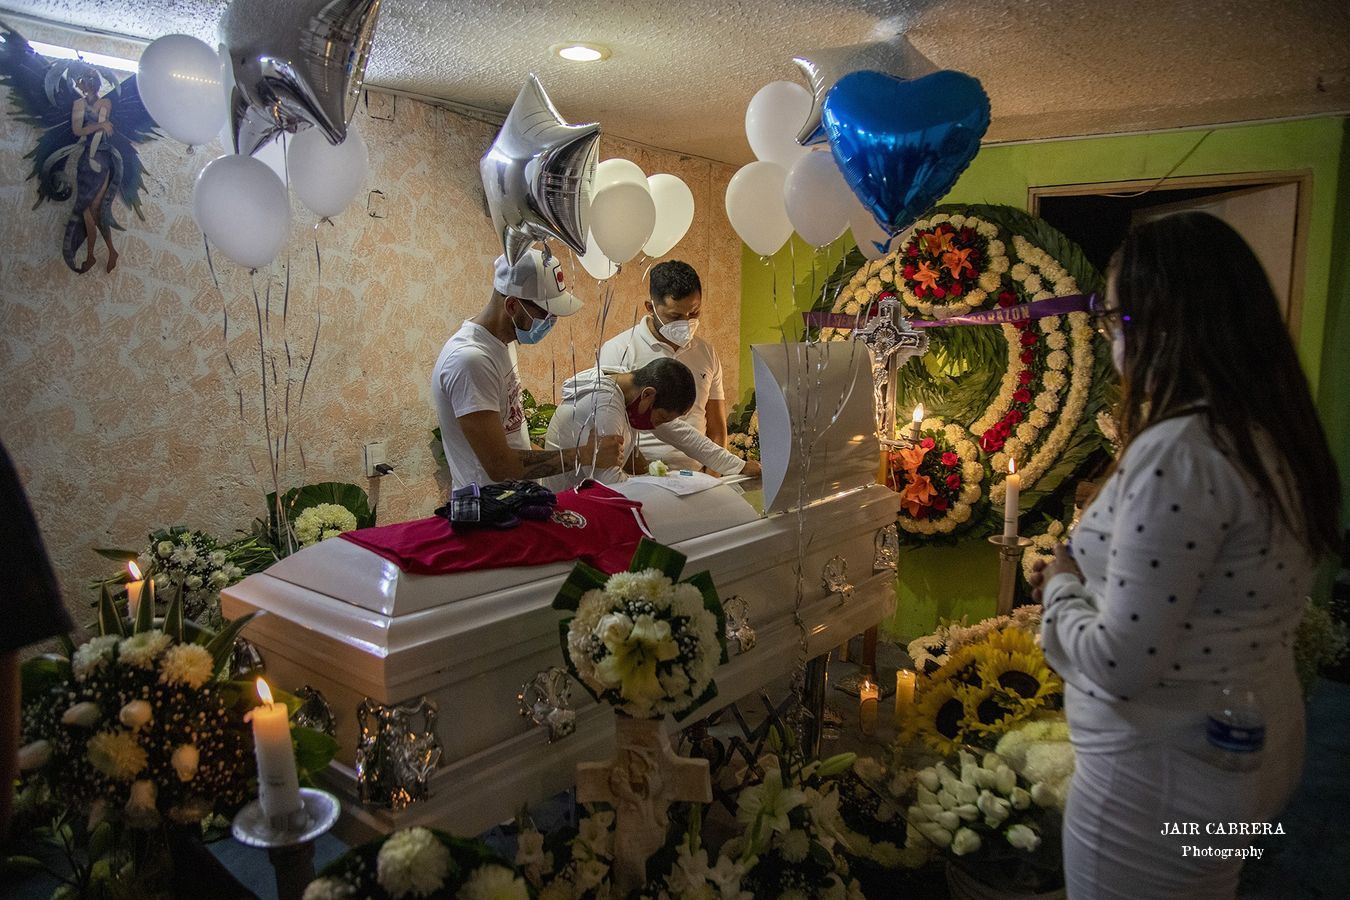 Velorio del joven Alessandro, quien fue asesinado y su cuerpo hallado en una maleta en calles de la colonia Guerrero en la Ciudad de México. Noviembre 2020